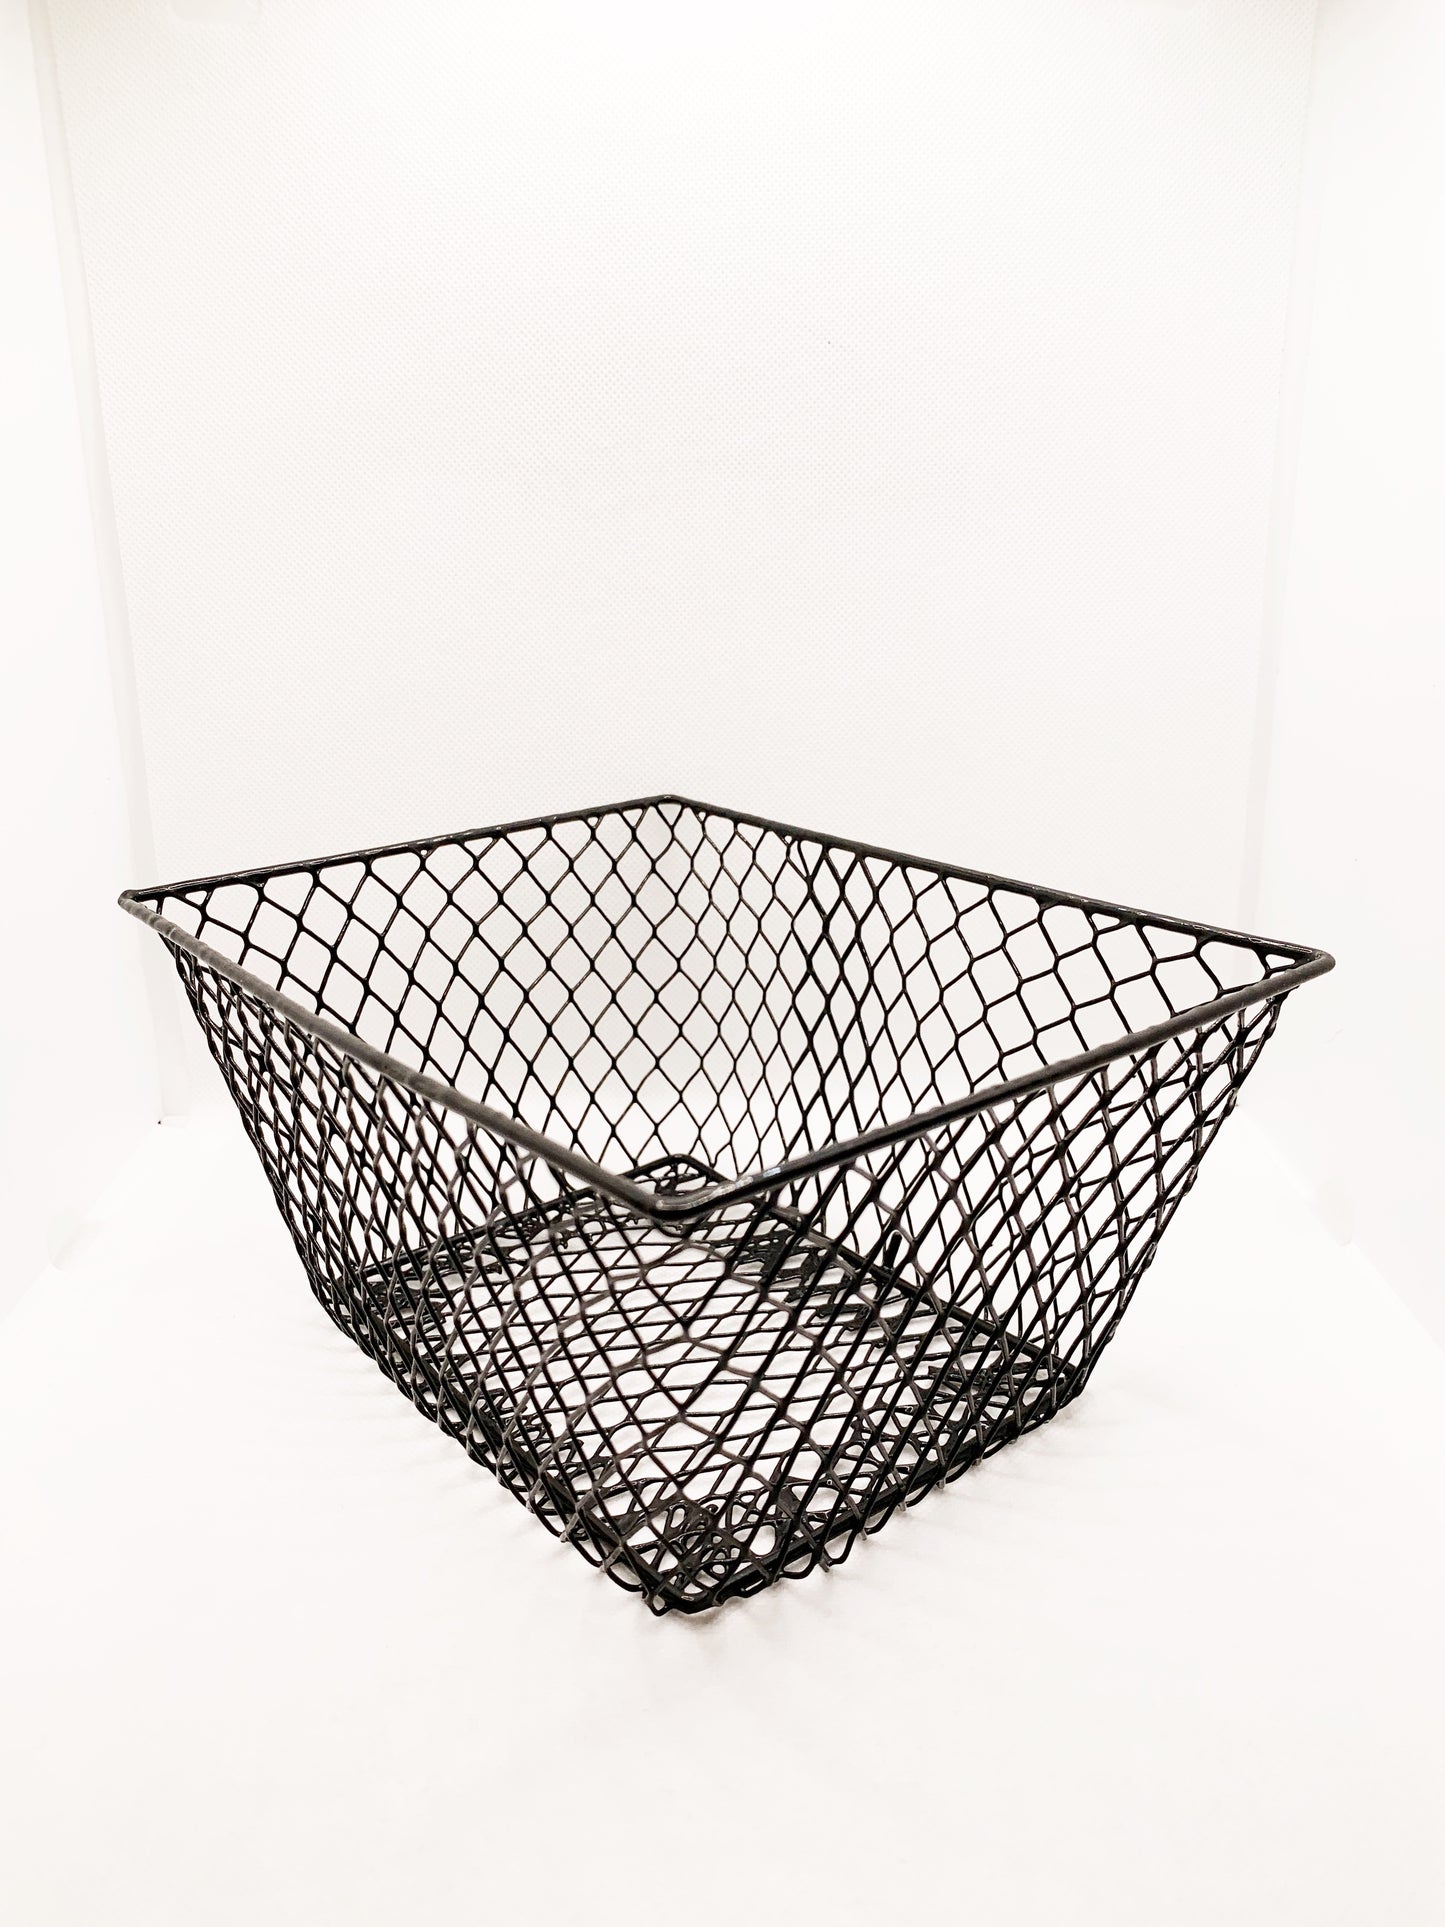 Wire Baskets